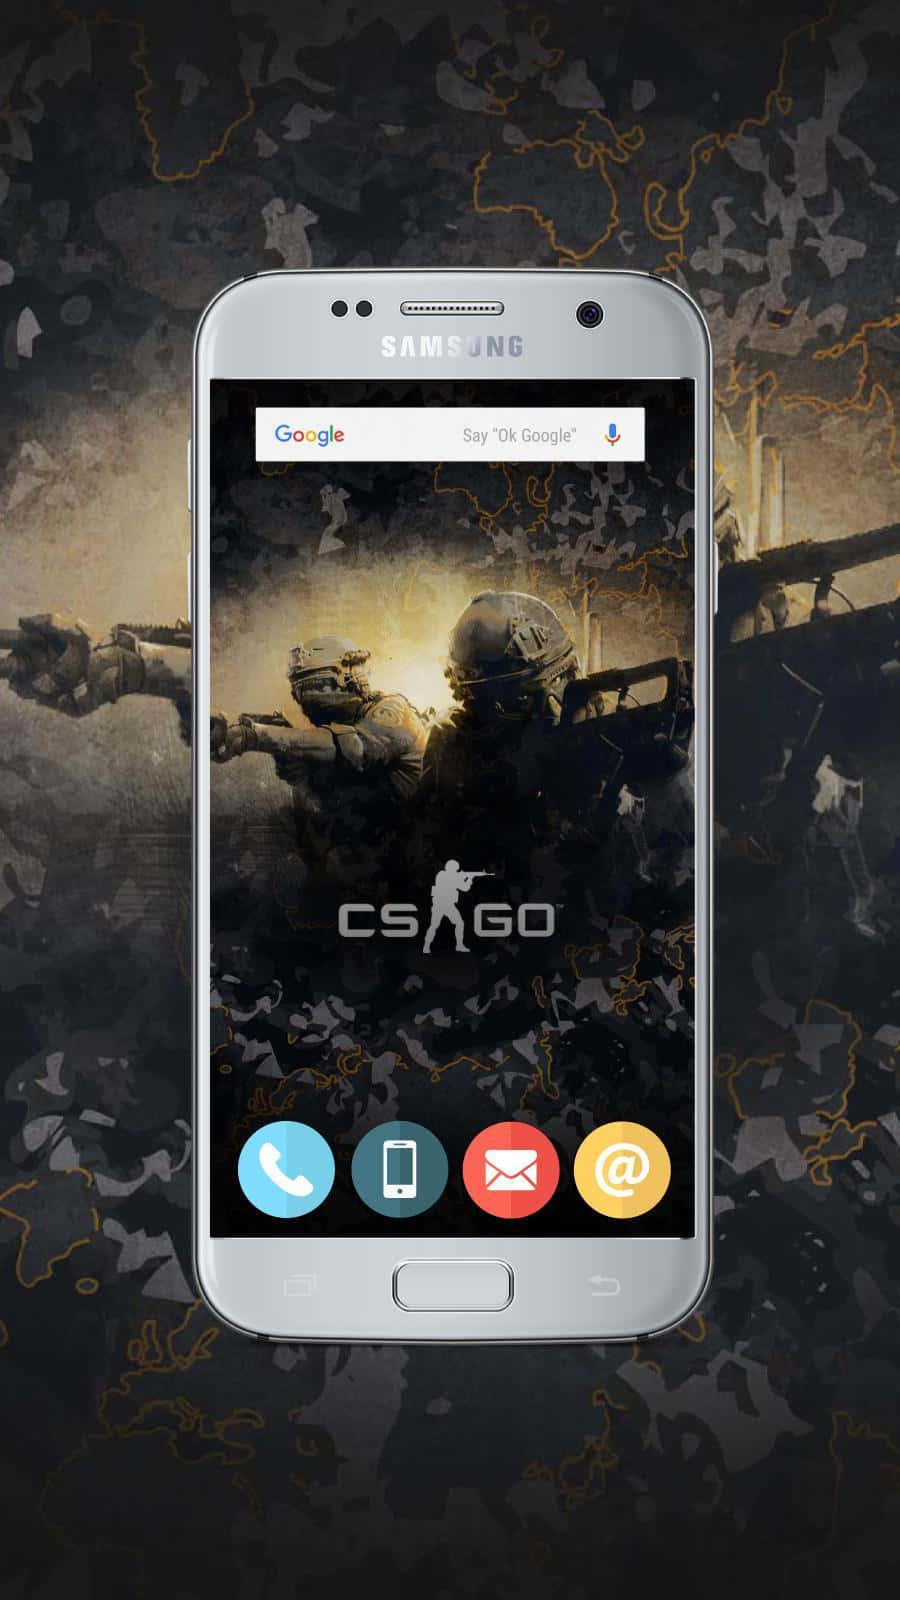 Bakgrundmed Csgo På En Android-enhet Som Kör Counter-strike Global Offensive Csgo.